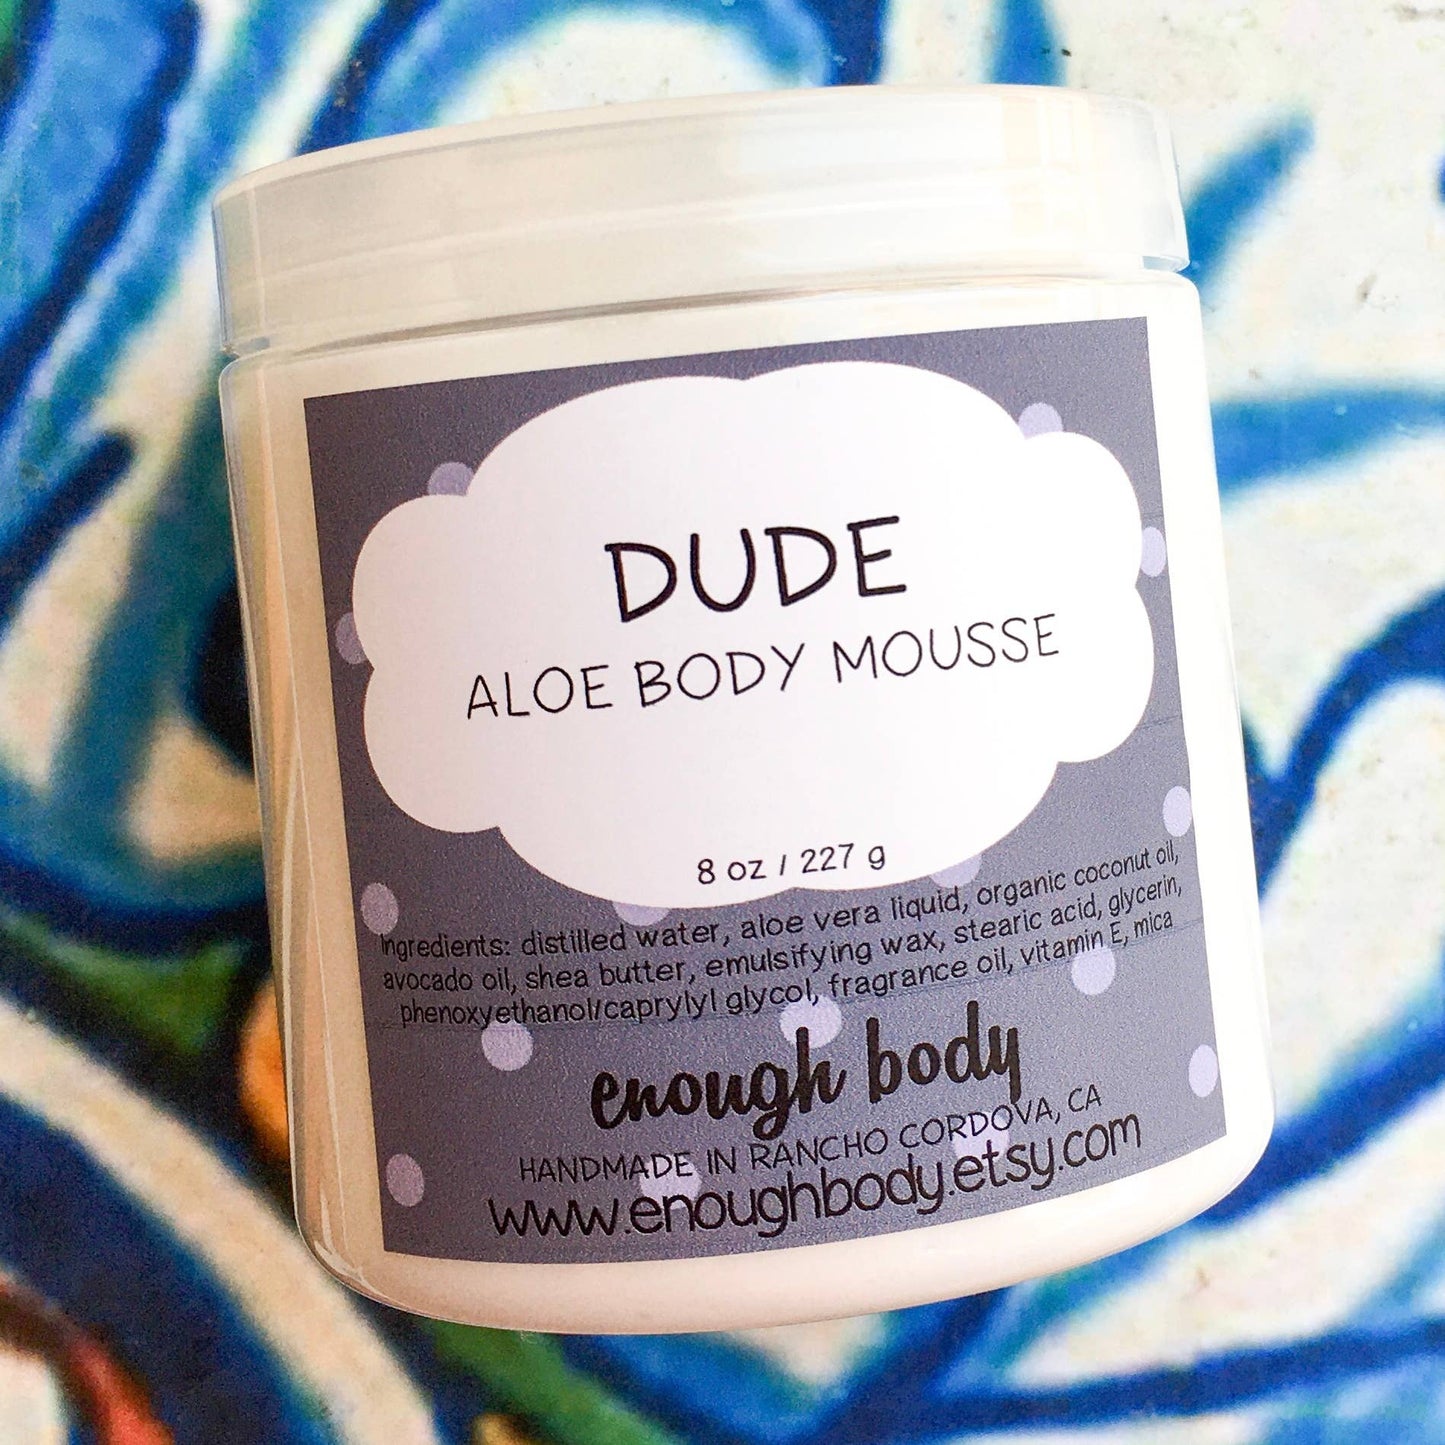 Suficiente cuerpo - Dude Aloe Body Mousse ~ Manteca corporal ~ Loción corporal